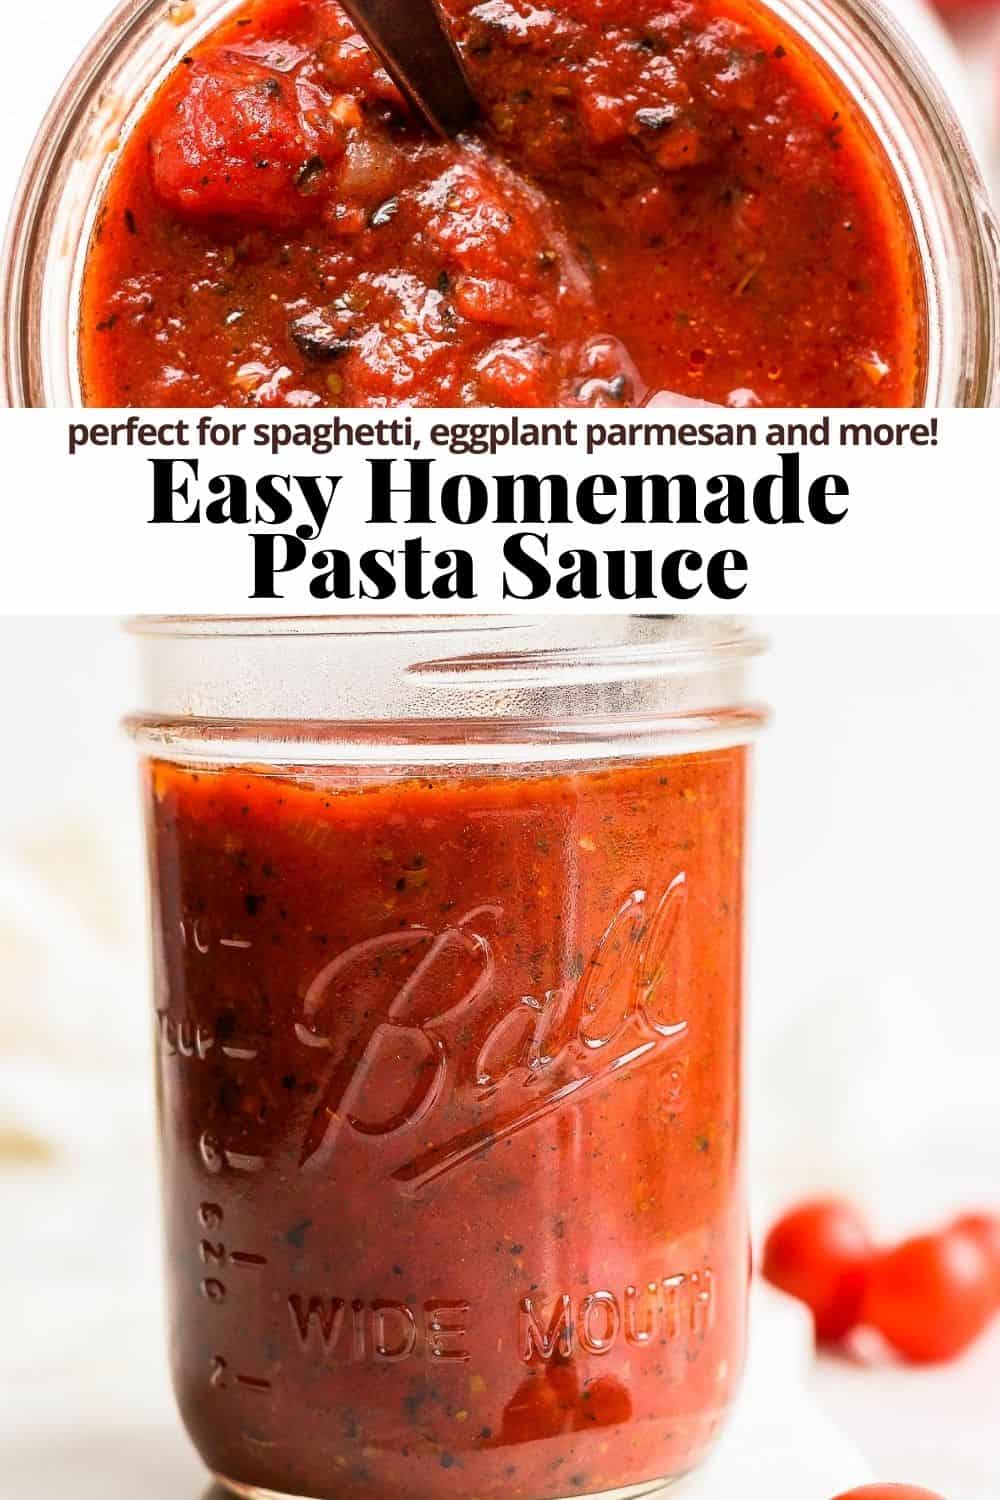 Pinterest image for an easy homemade pasta sauce.